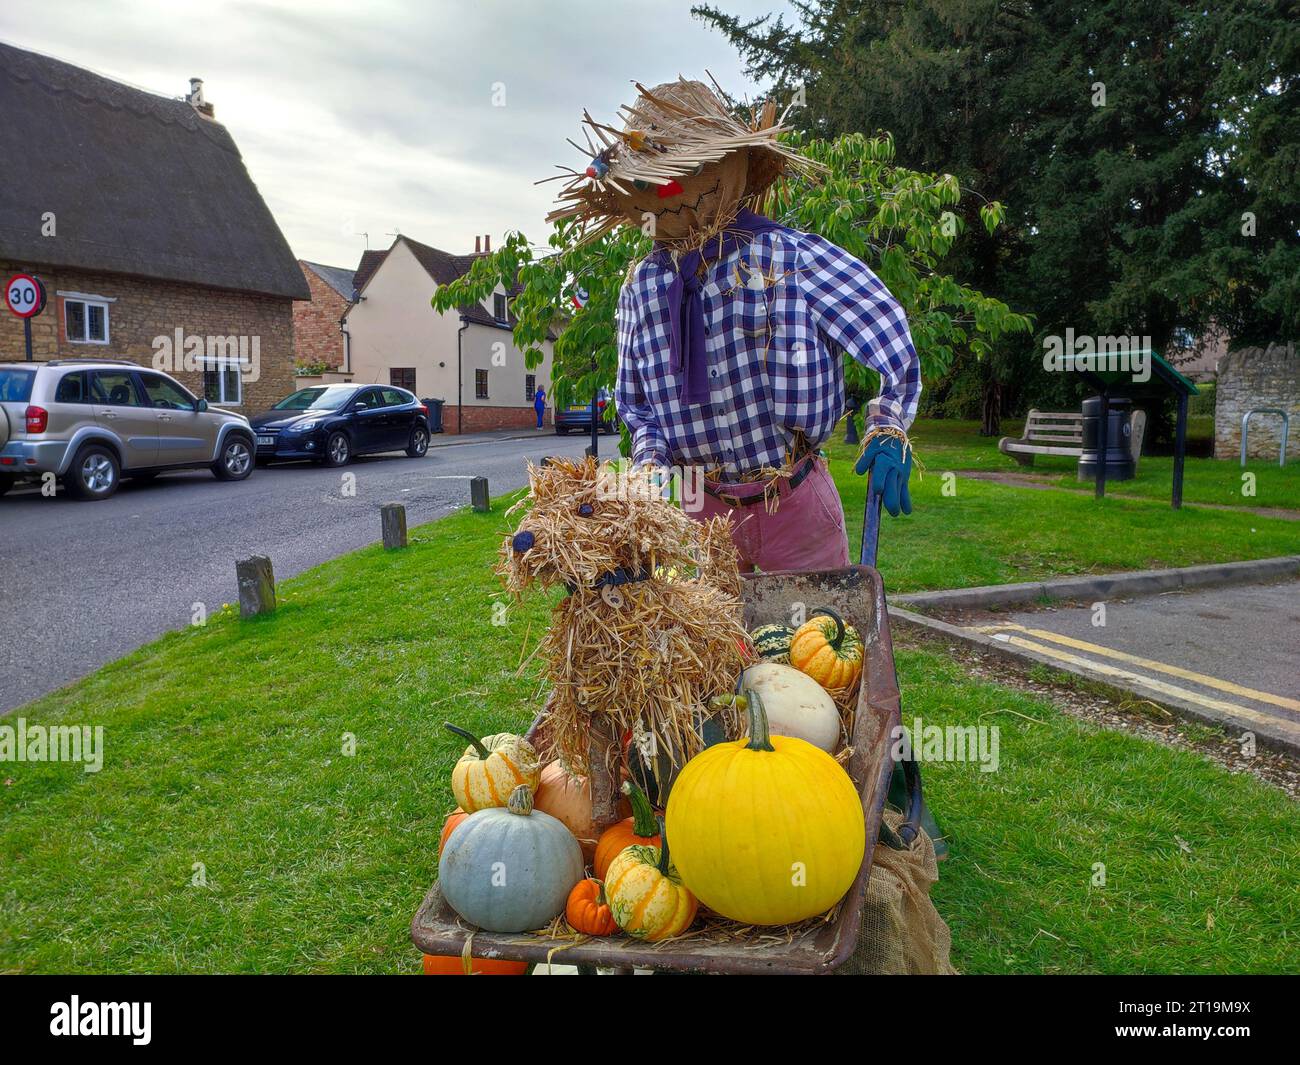 Spaventapasseri da giardinaggio con carriola contenente cane e zucche al festival degli spaventapasseri sul green del villaggio di Sharnbrook, Bedfordshire, Inghilterra, Regno Unito Foto Stock